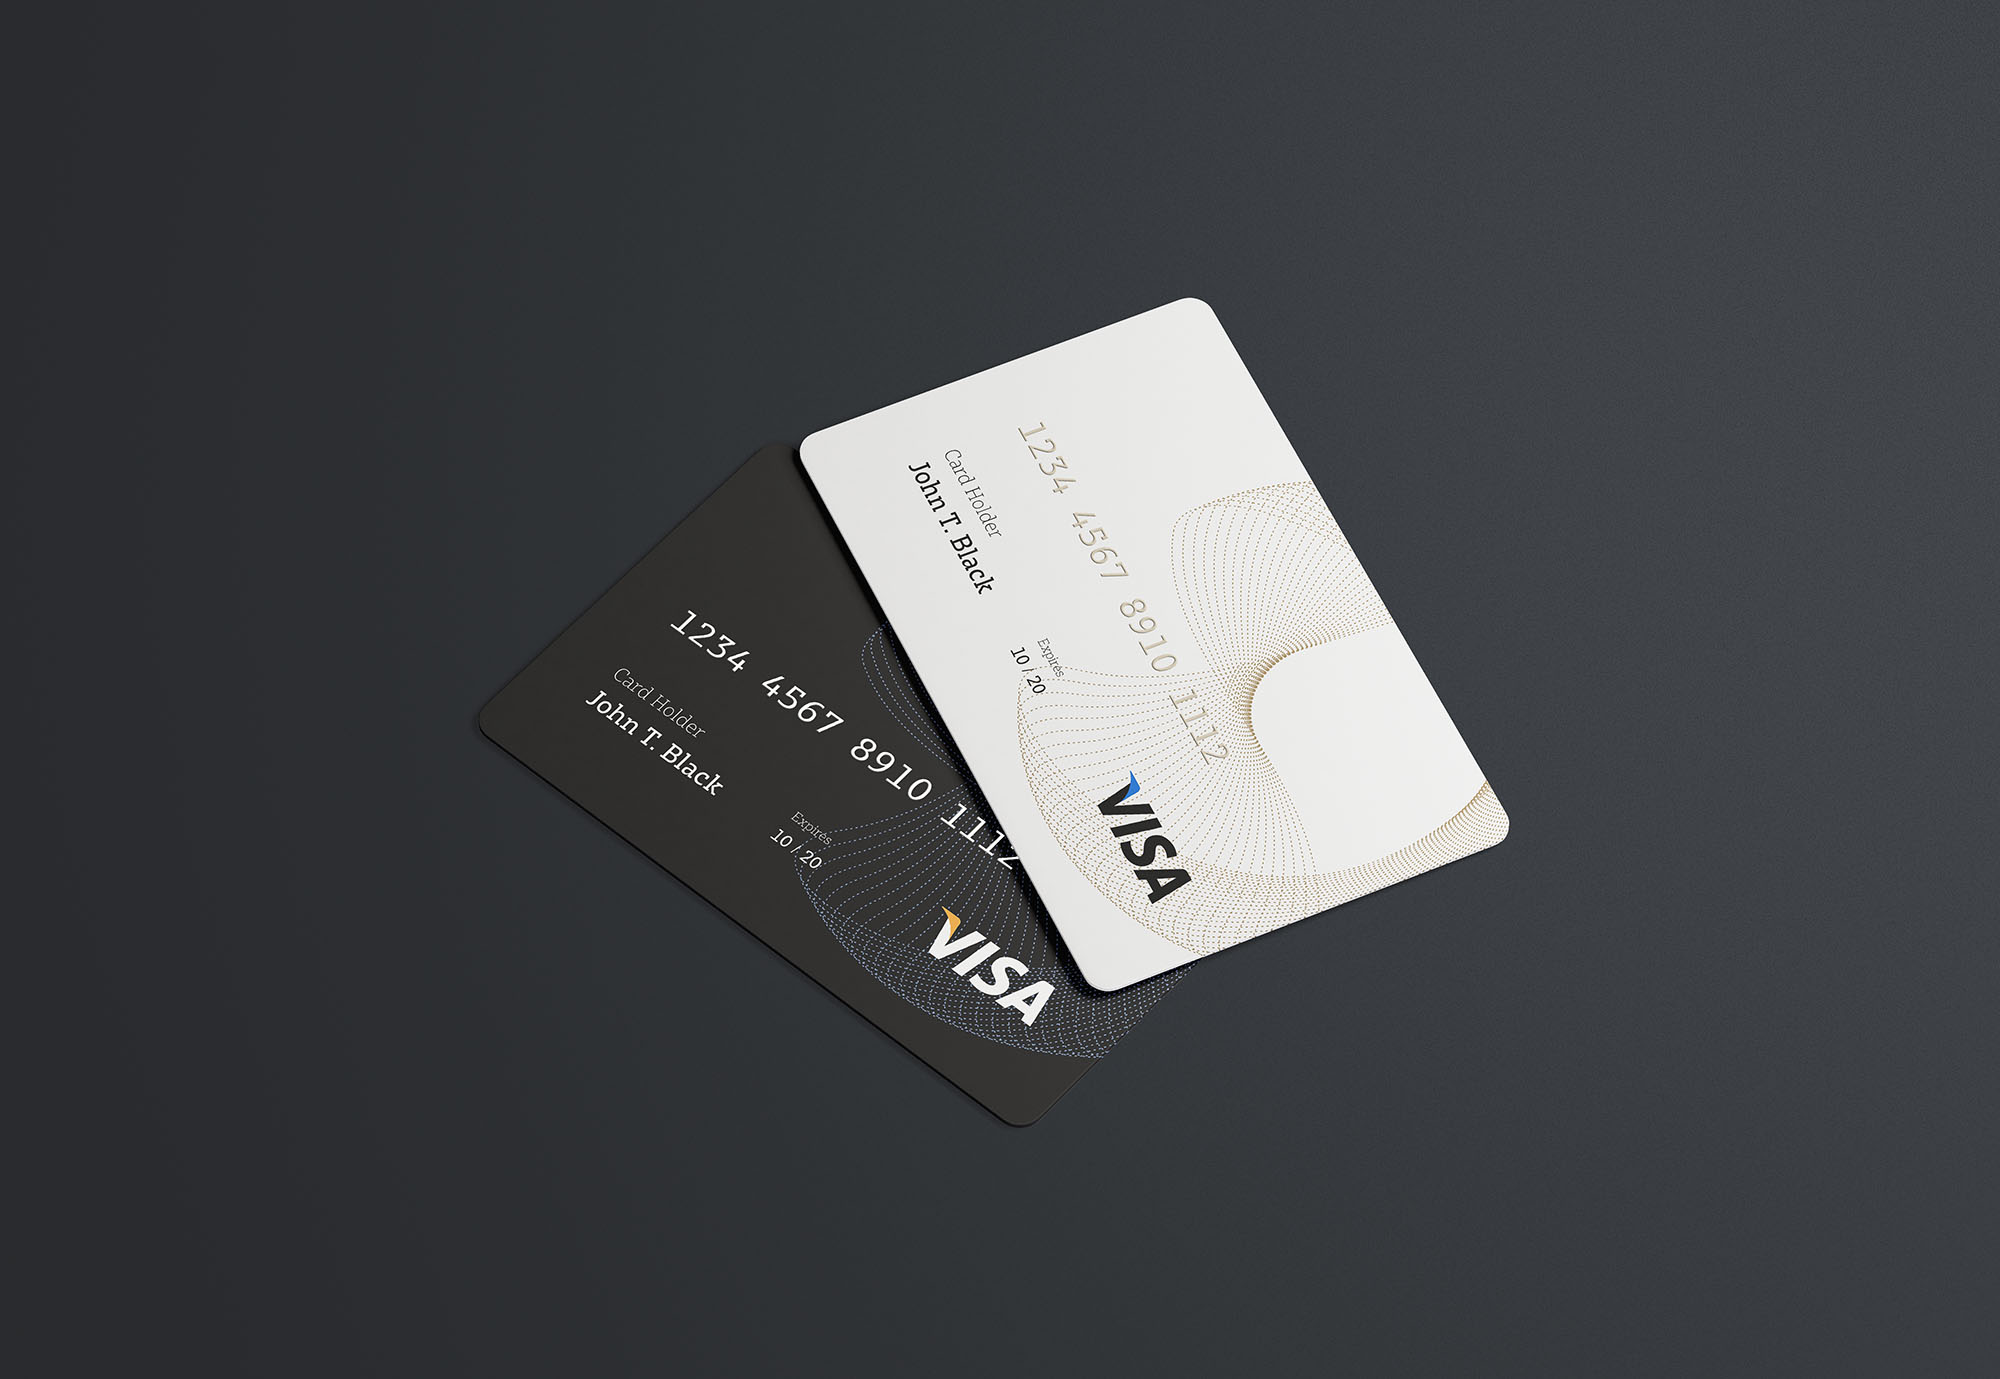 银行卡/信用卡外观设计样机模板 PSD Credit Card Mockup插图